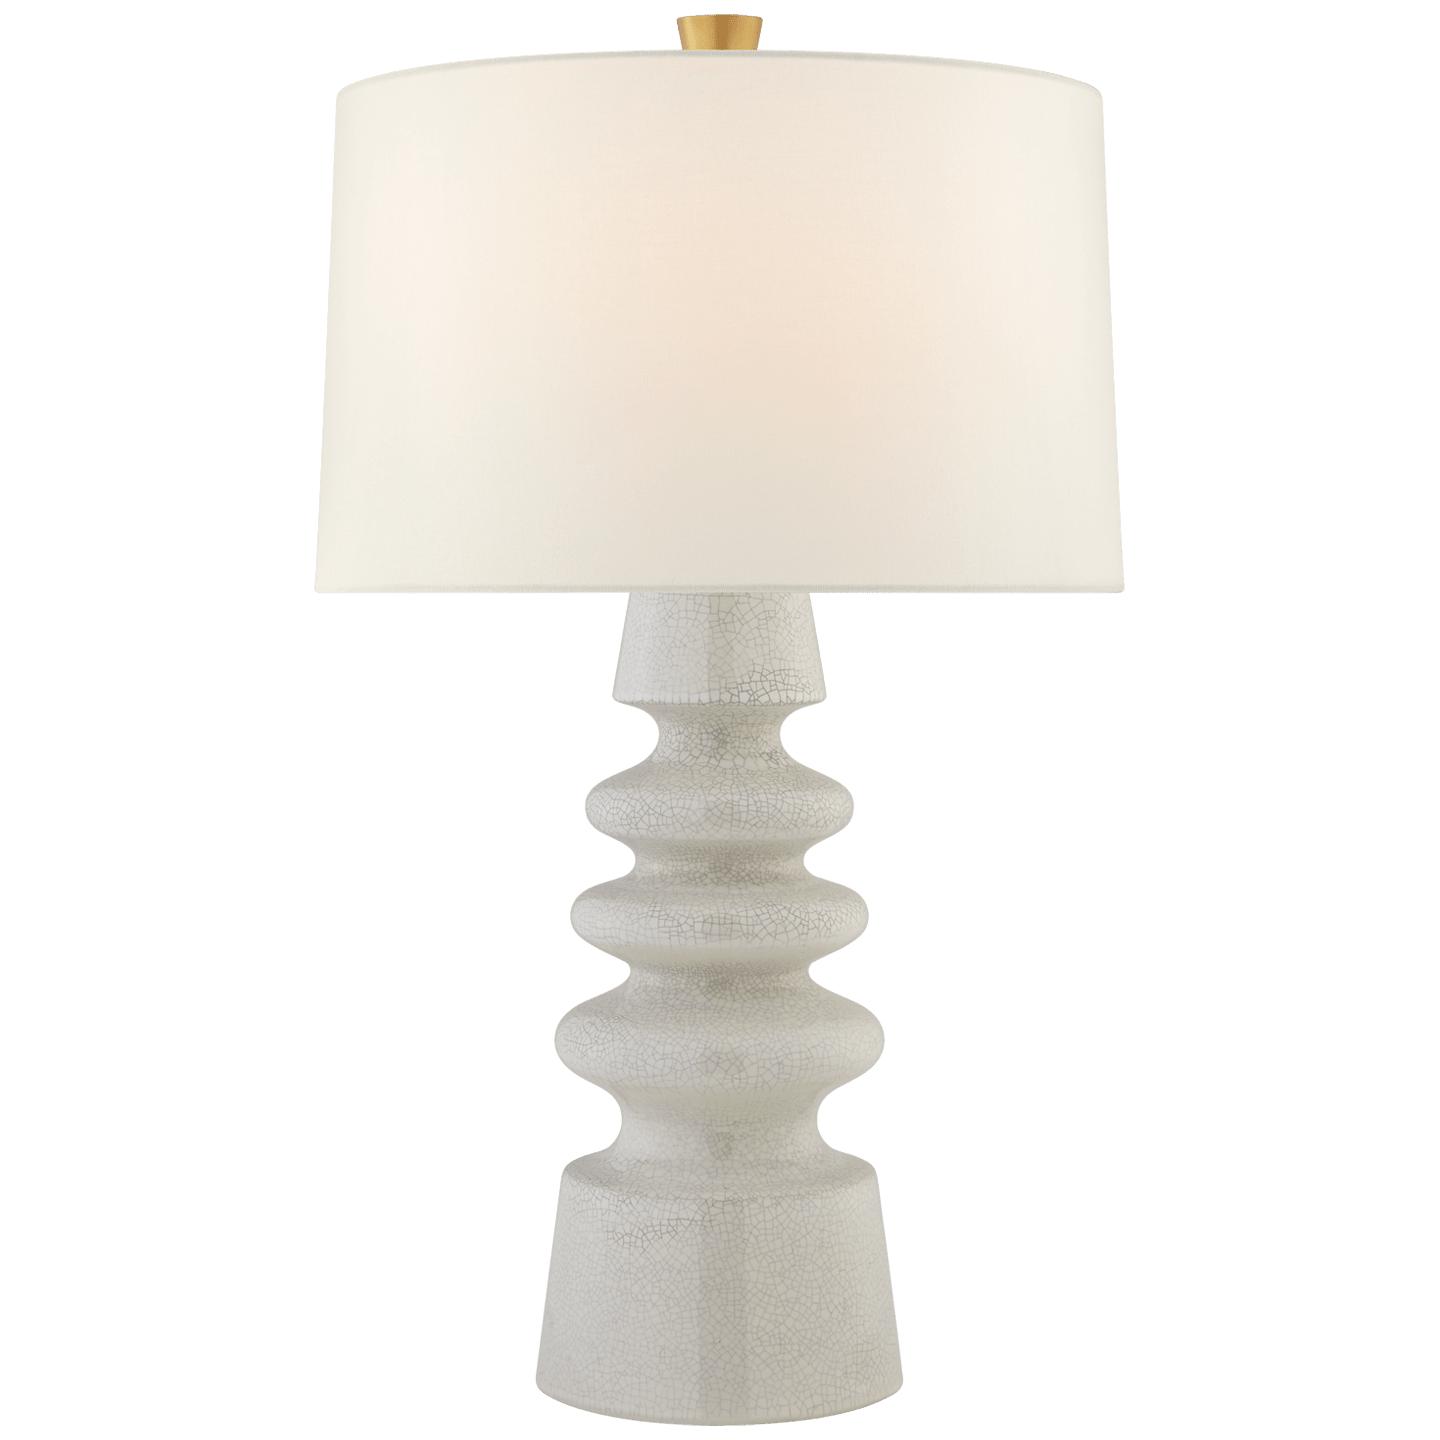 Купить Настольная лампа Andreas Medium Table Lamp в интернет-магазине roooms.ru